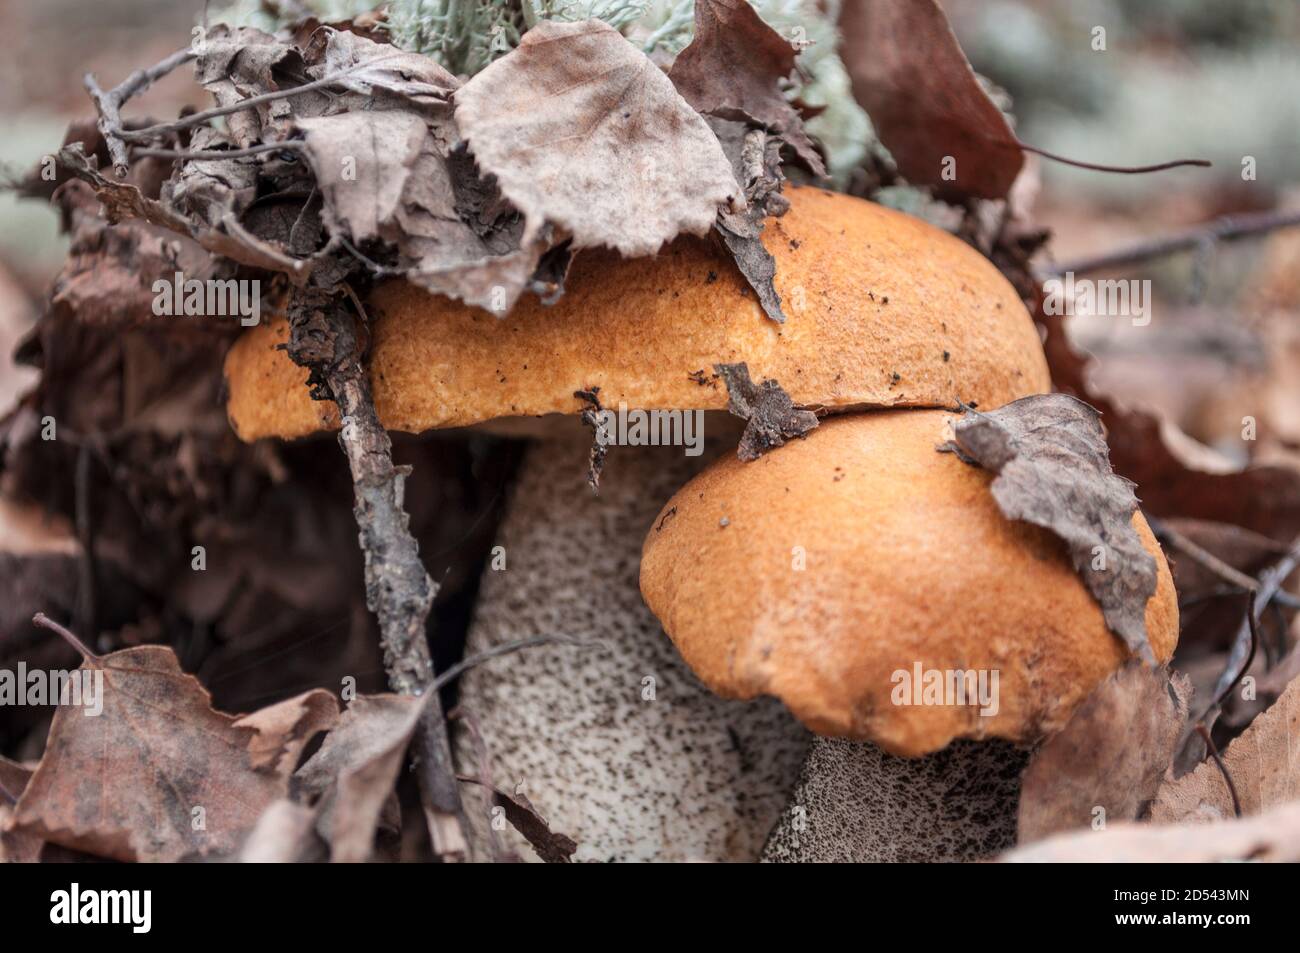 Deux champignons de bouleau avec un chapeau orange dans une feuille d'arbre tombée, chapeau sous les feuilles, photo macro Banque D'Images